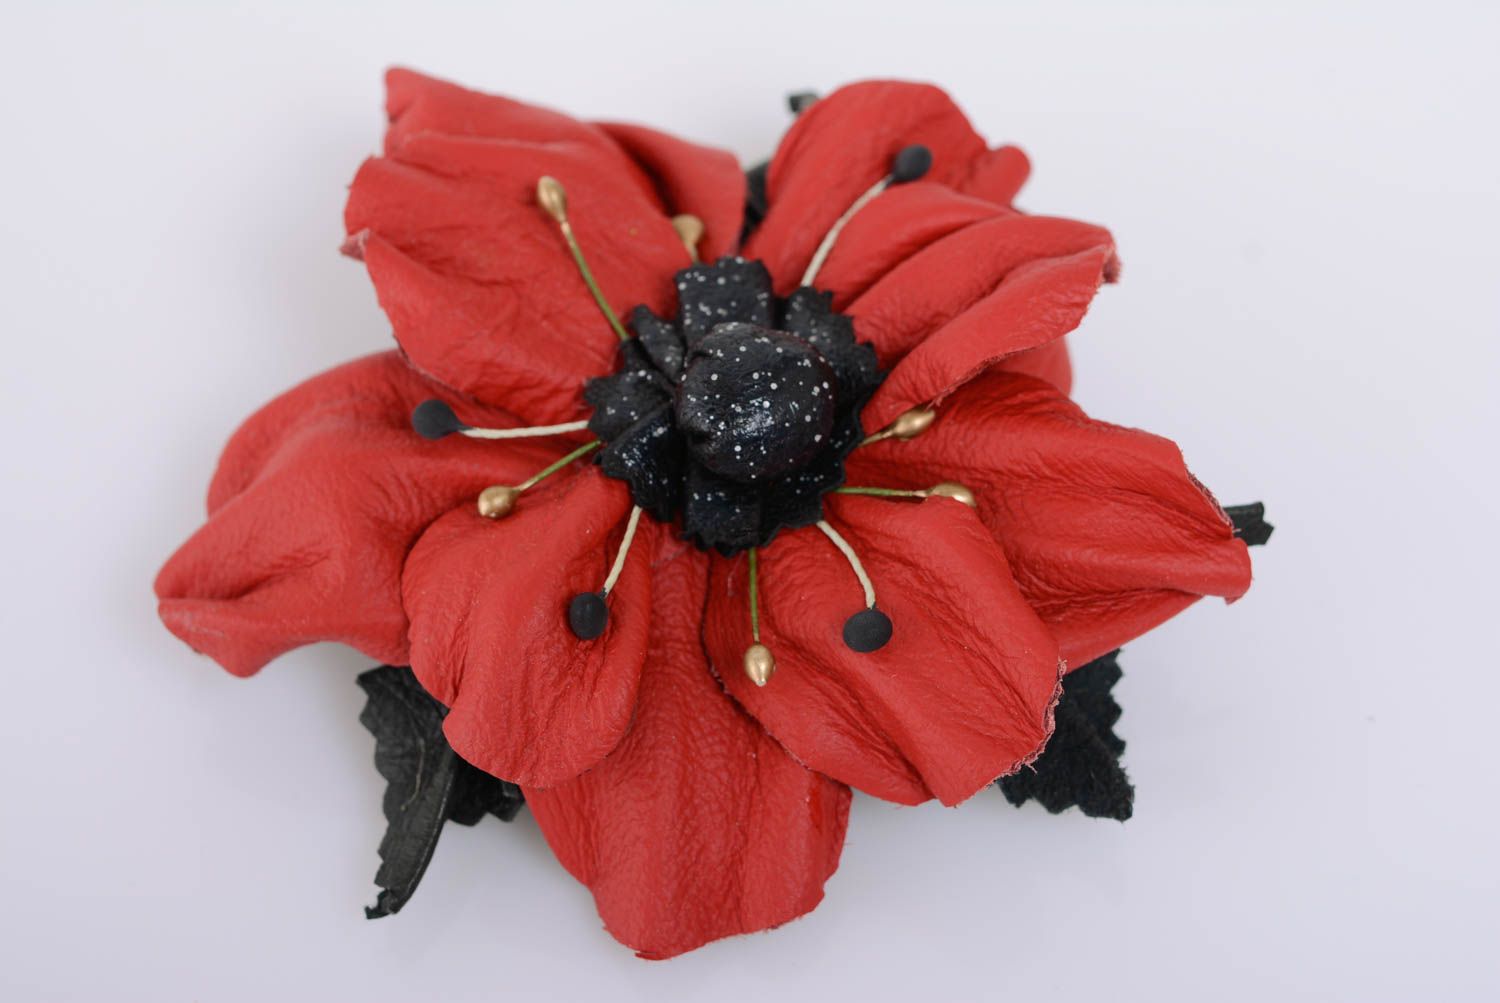 Брошь заколка в виде цветка красная крупная стильная кожаная ручной работы фото 1